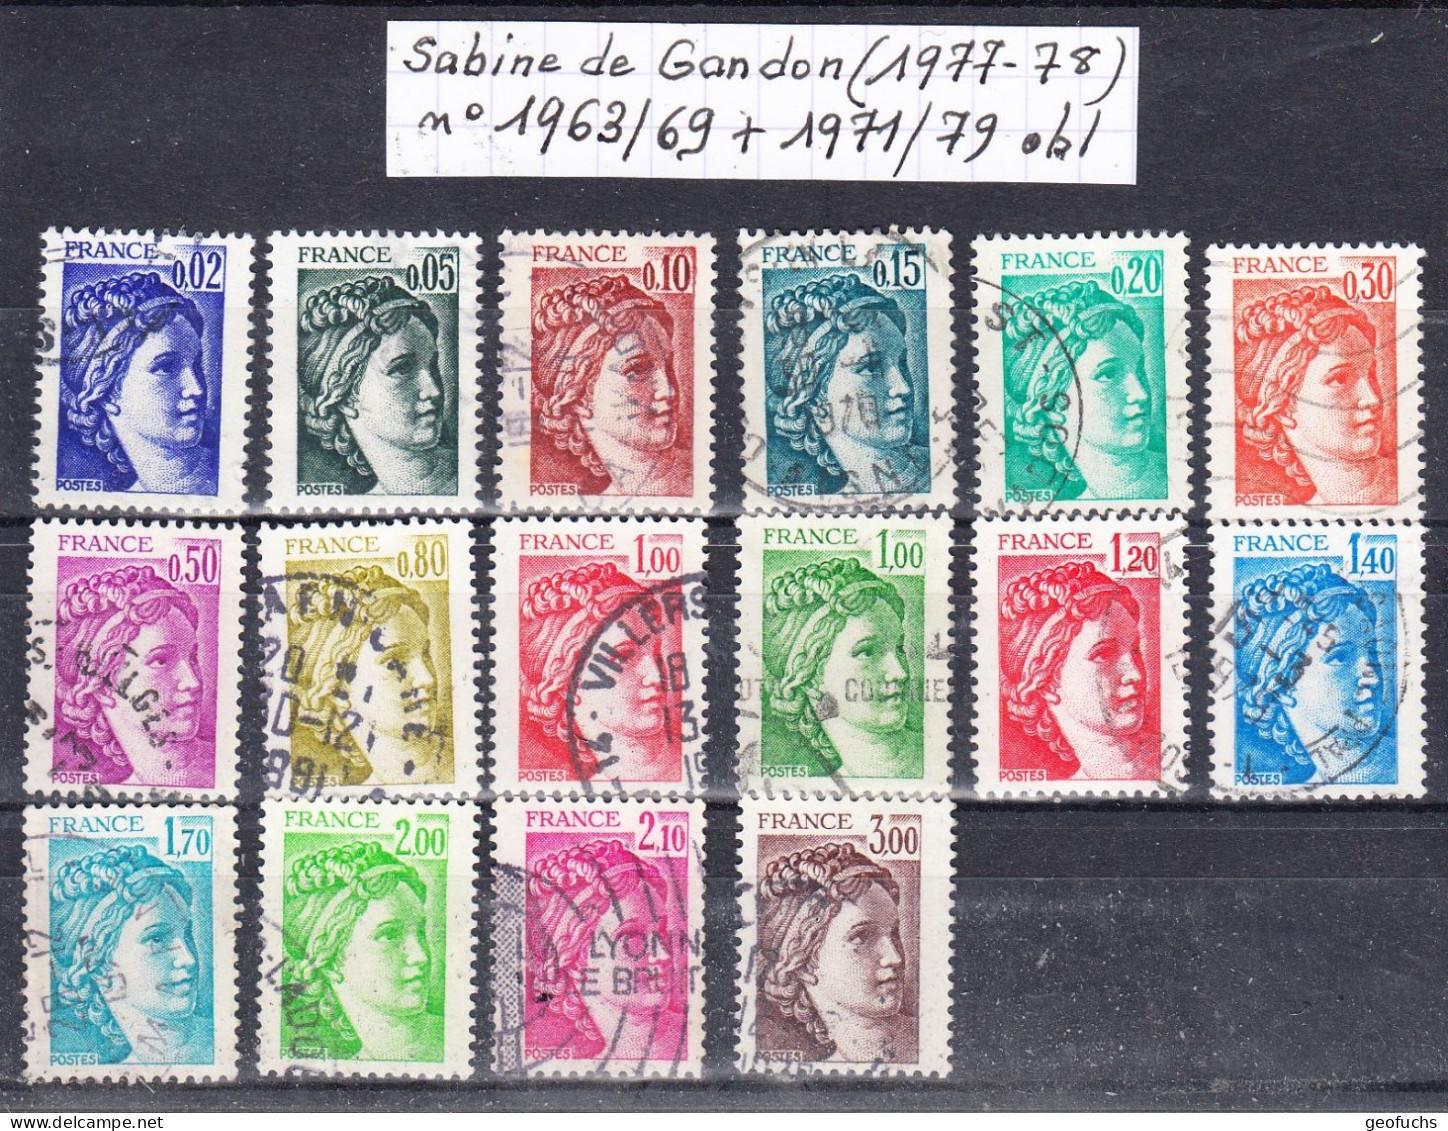 France Sabine De Gandon (1977-78) Y/T N°1963/69 + 1971/79 Oblitérés - 1977-1981 Sabine De Gandon